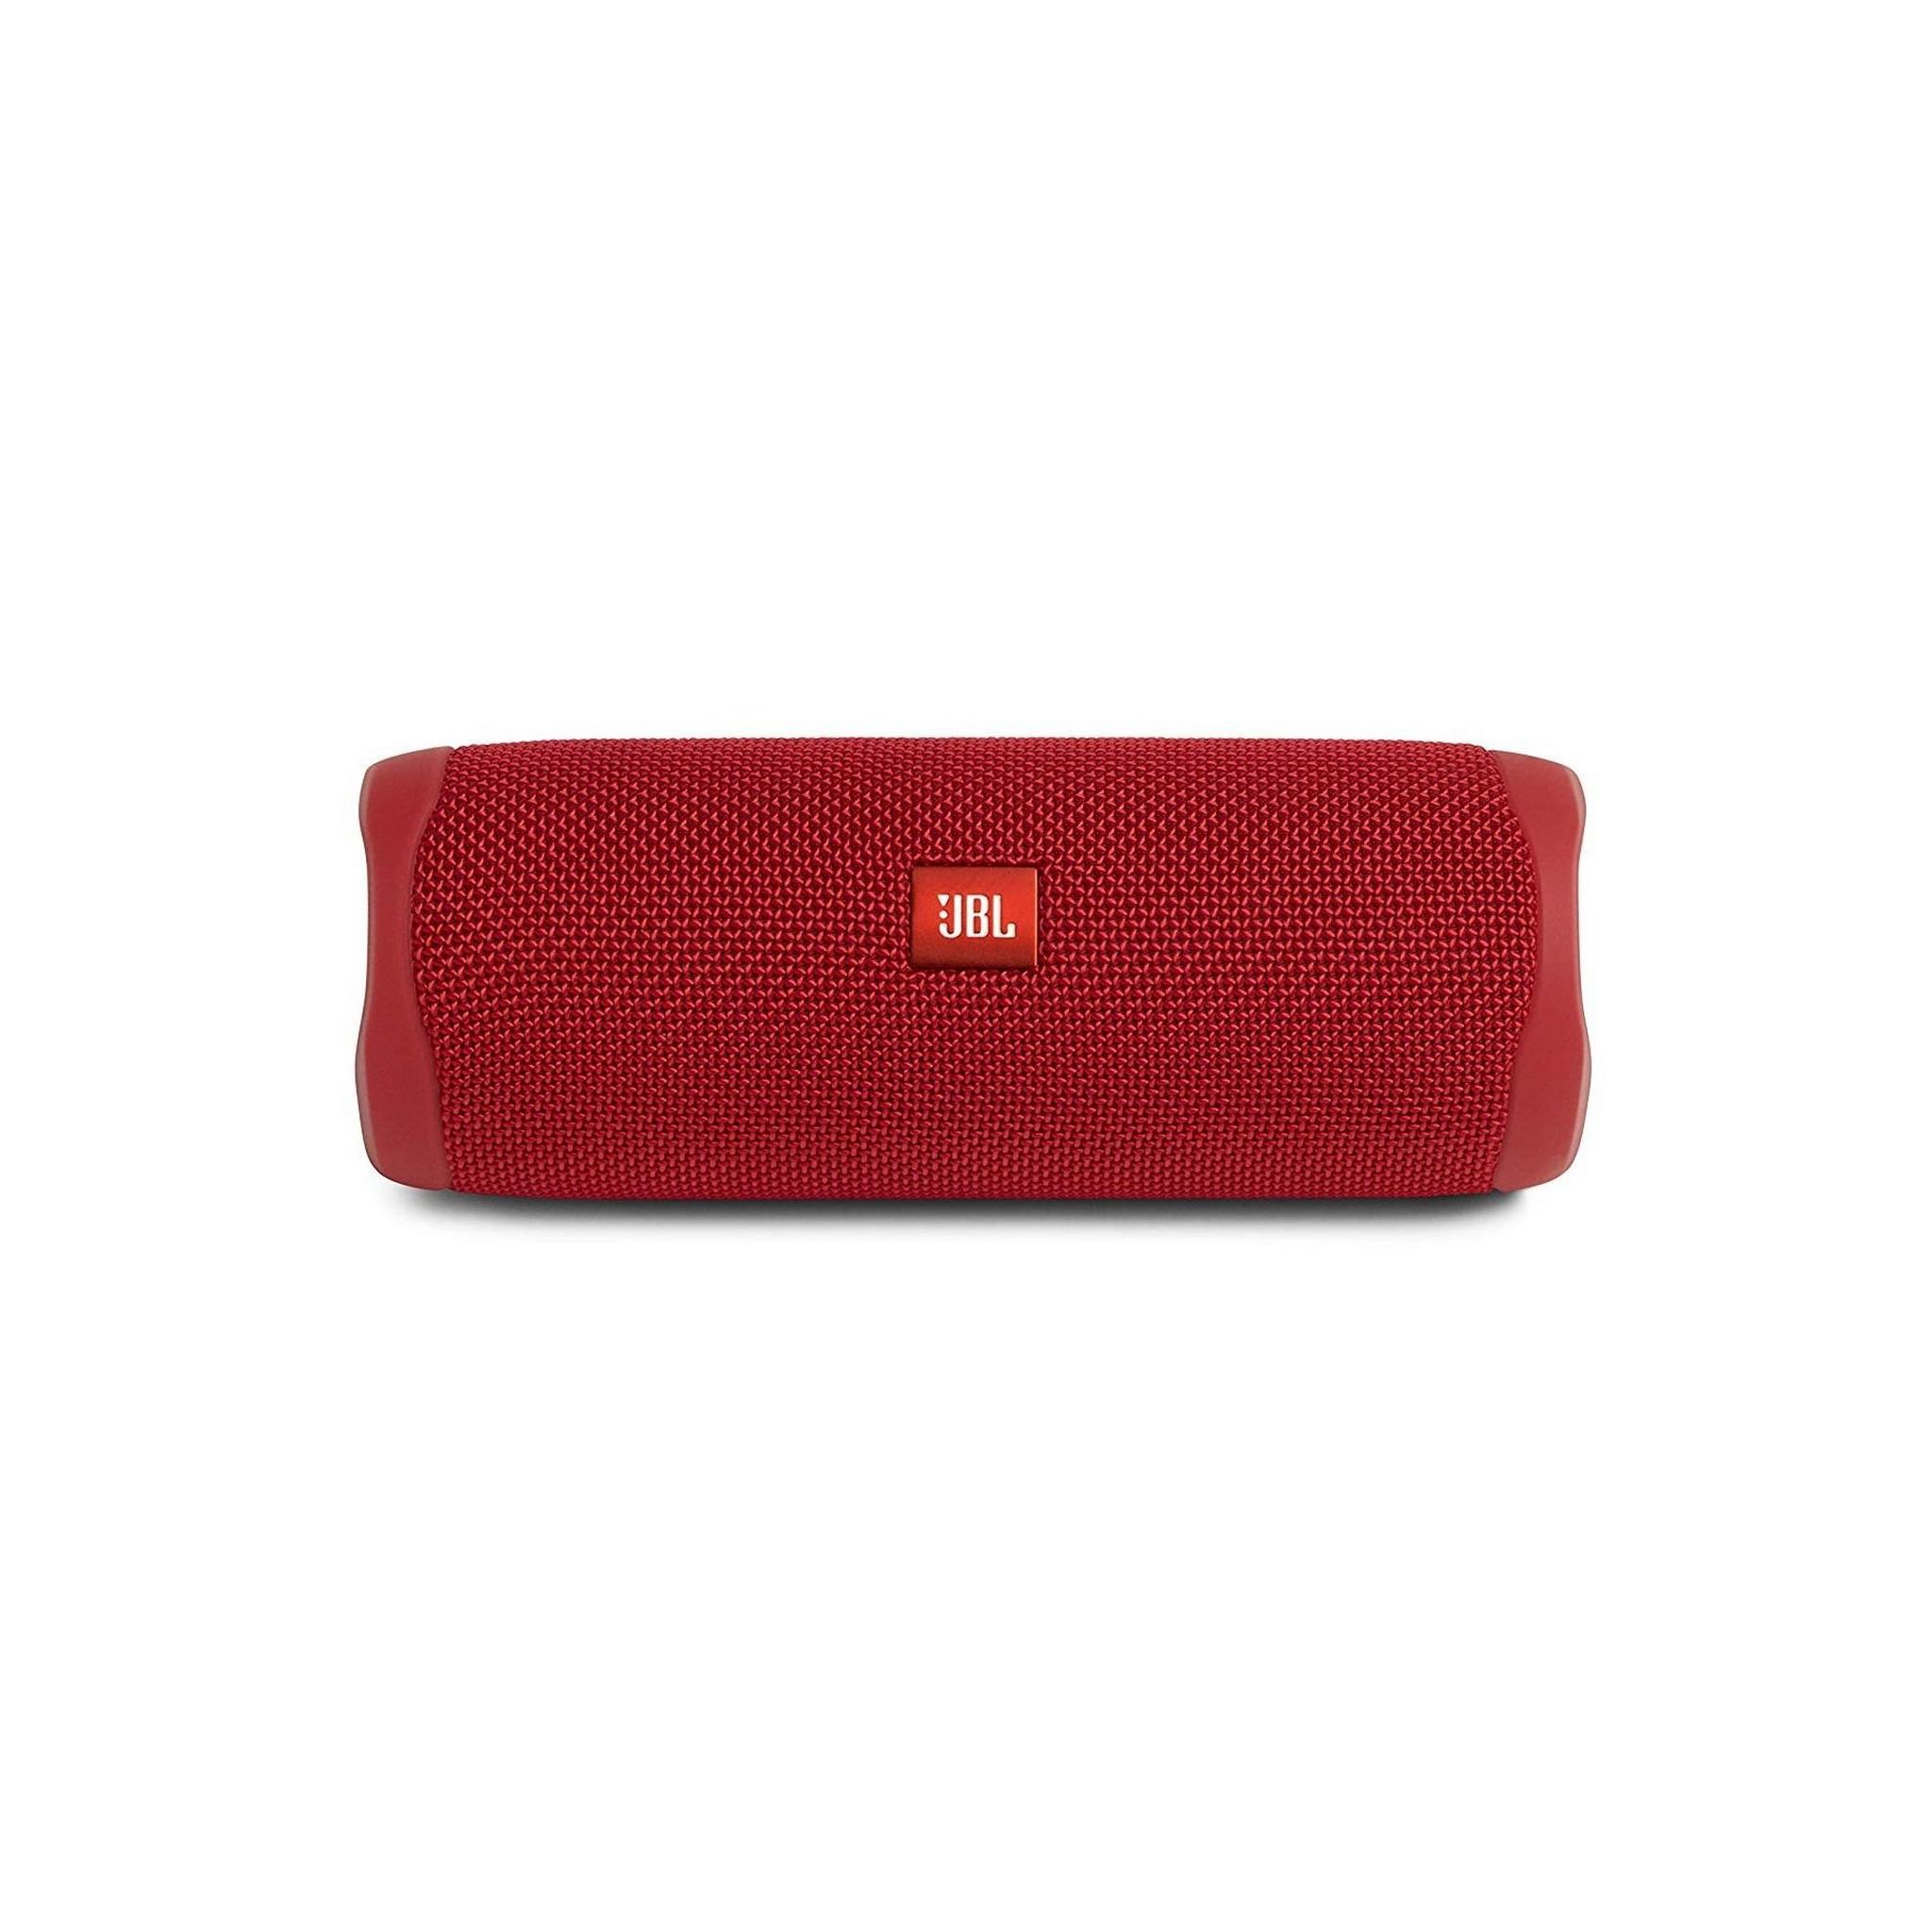 مكبرات الصوت جي بي إل فليب 5 المحمولة والمضادة للماء بتقنية البلوتوث – أحمر